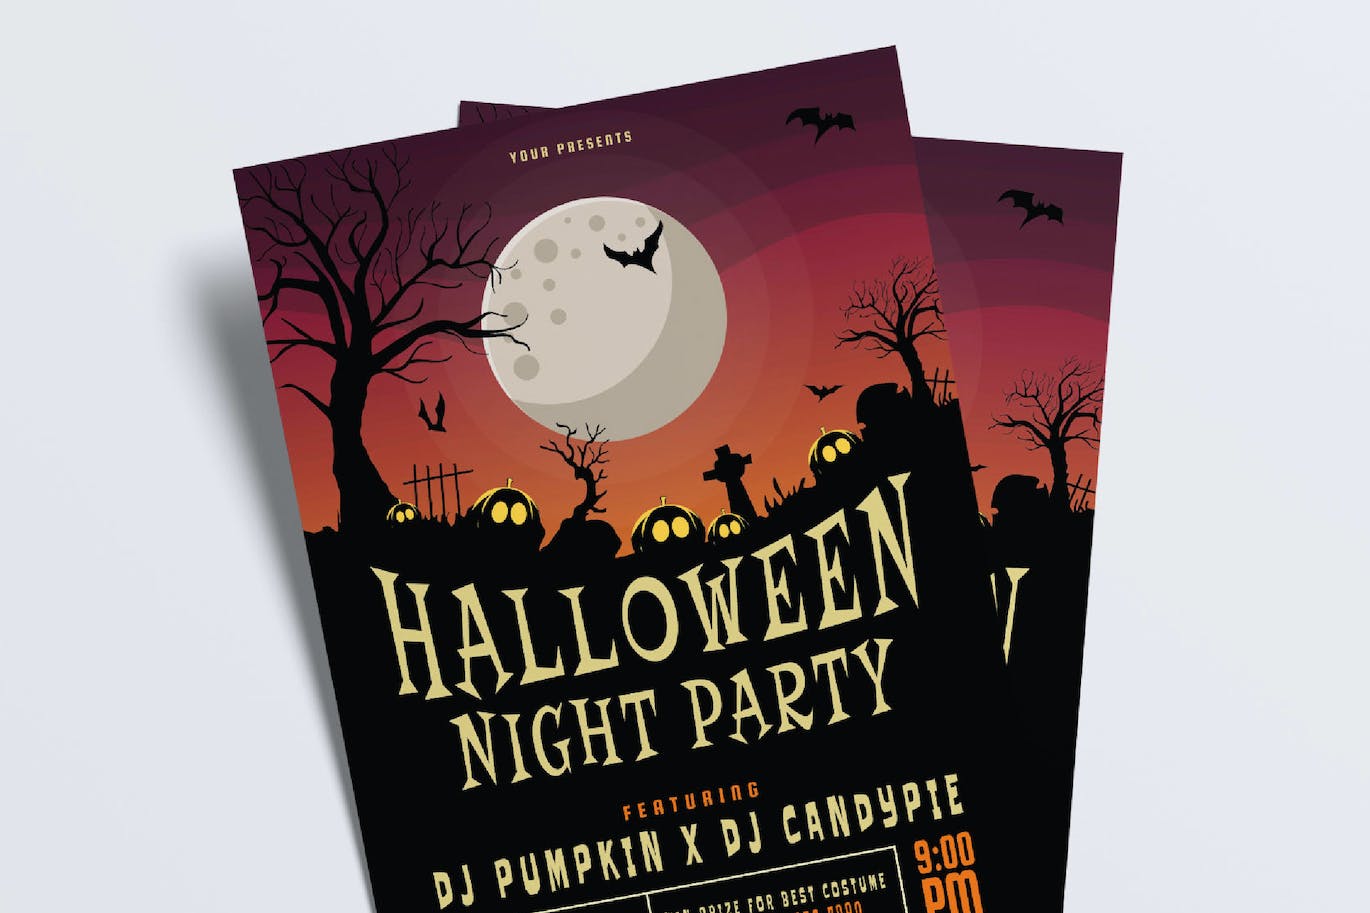 万圣节之夜派对宣传单模板 Halloween Night Party Flyer Set 设计素材 第3张